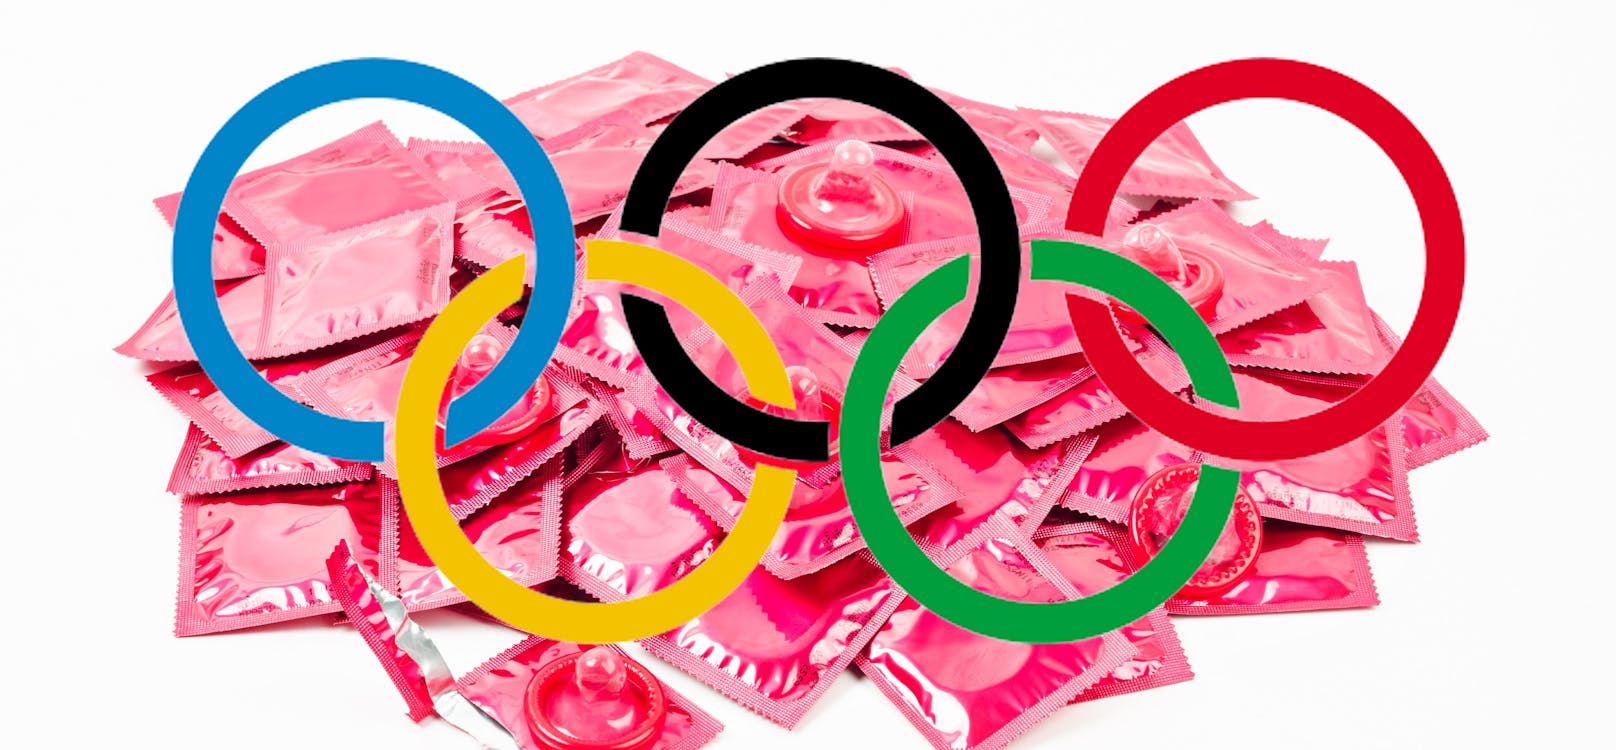 Kondome sind bei Olympia ein begehrtes Gut